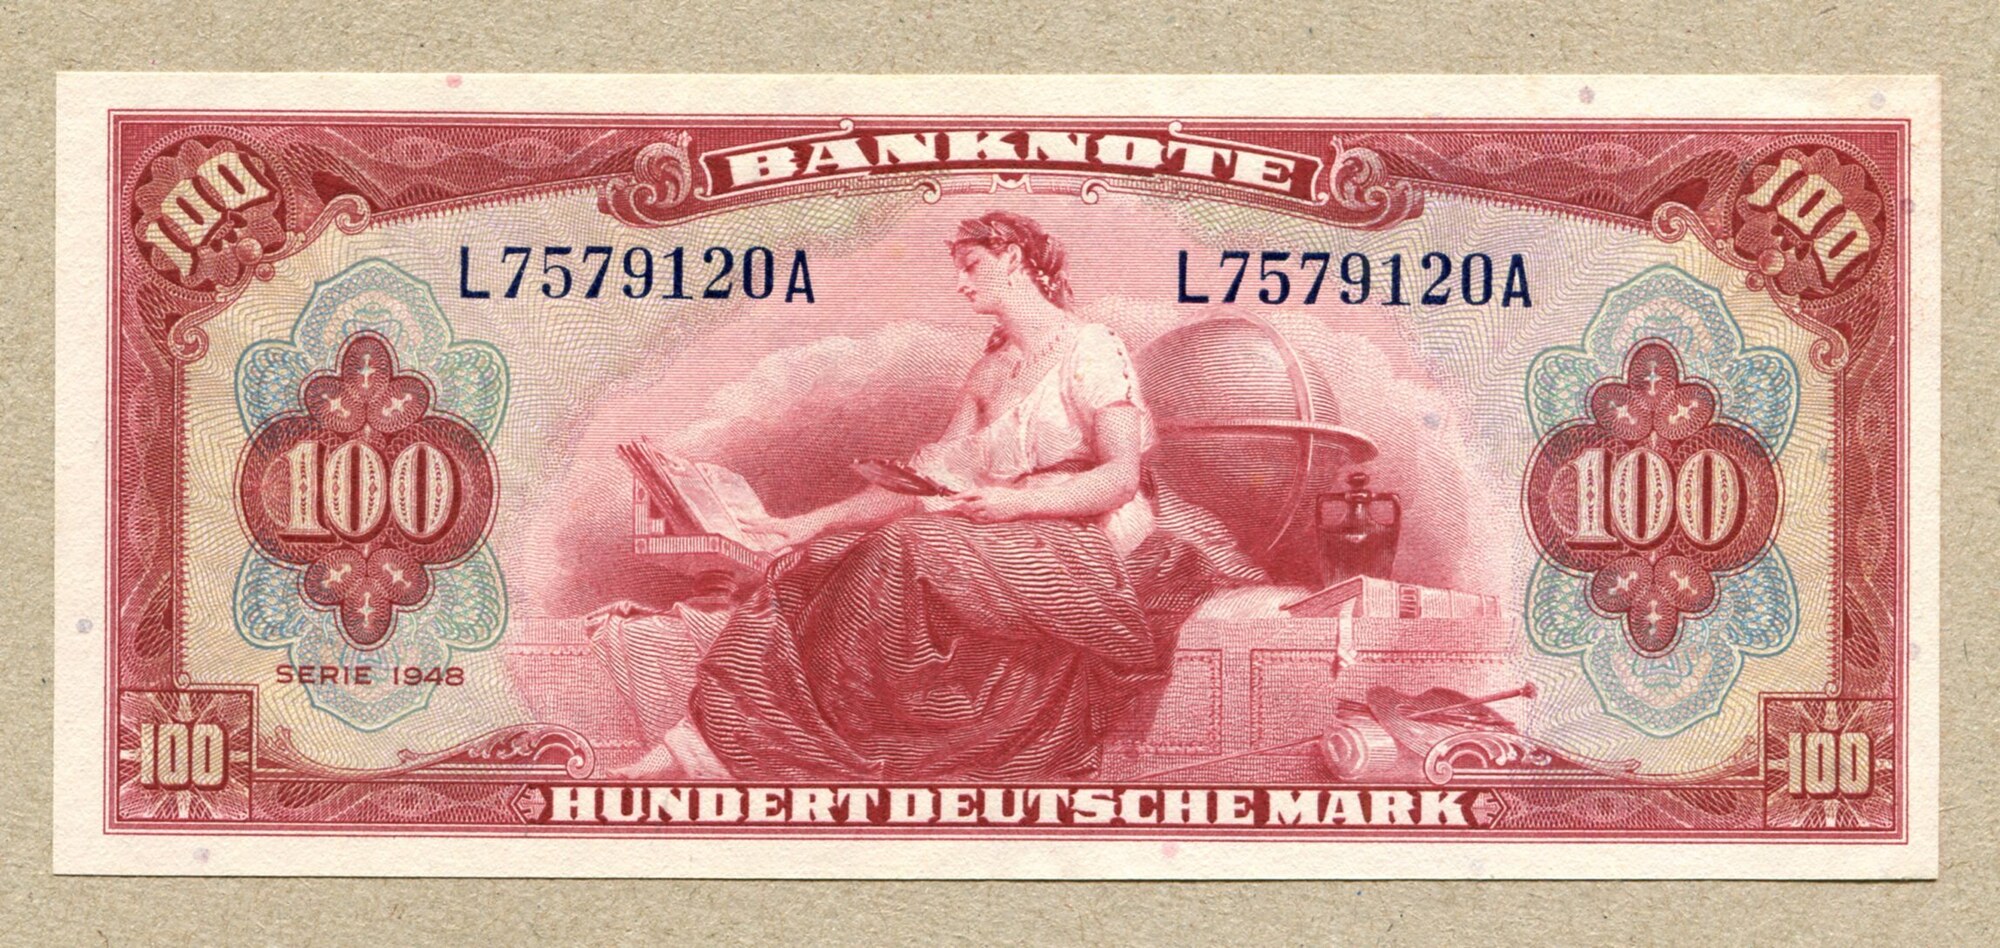 Купюра марка. Марка ФРГ 1948. Валюта Германии марка. Немецкие марки купюры. Марка ФРГ банкноты 1948.